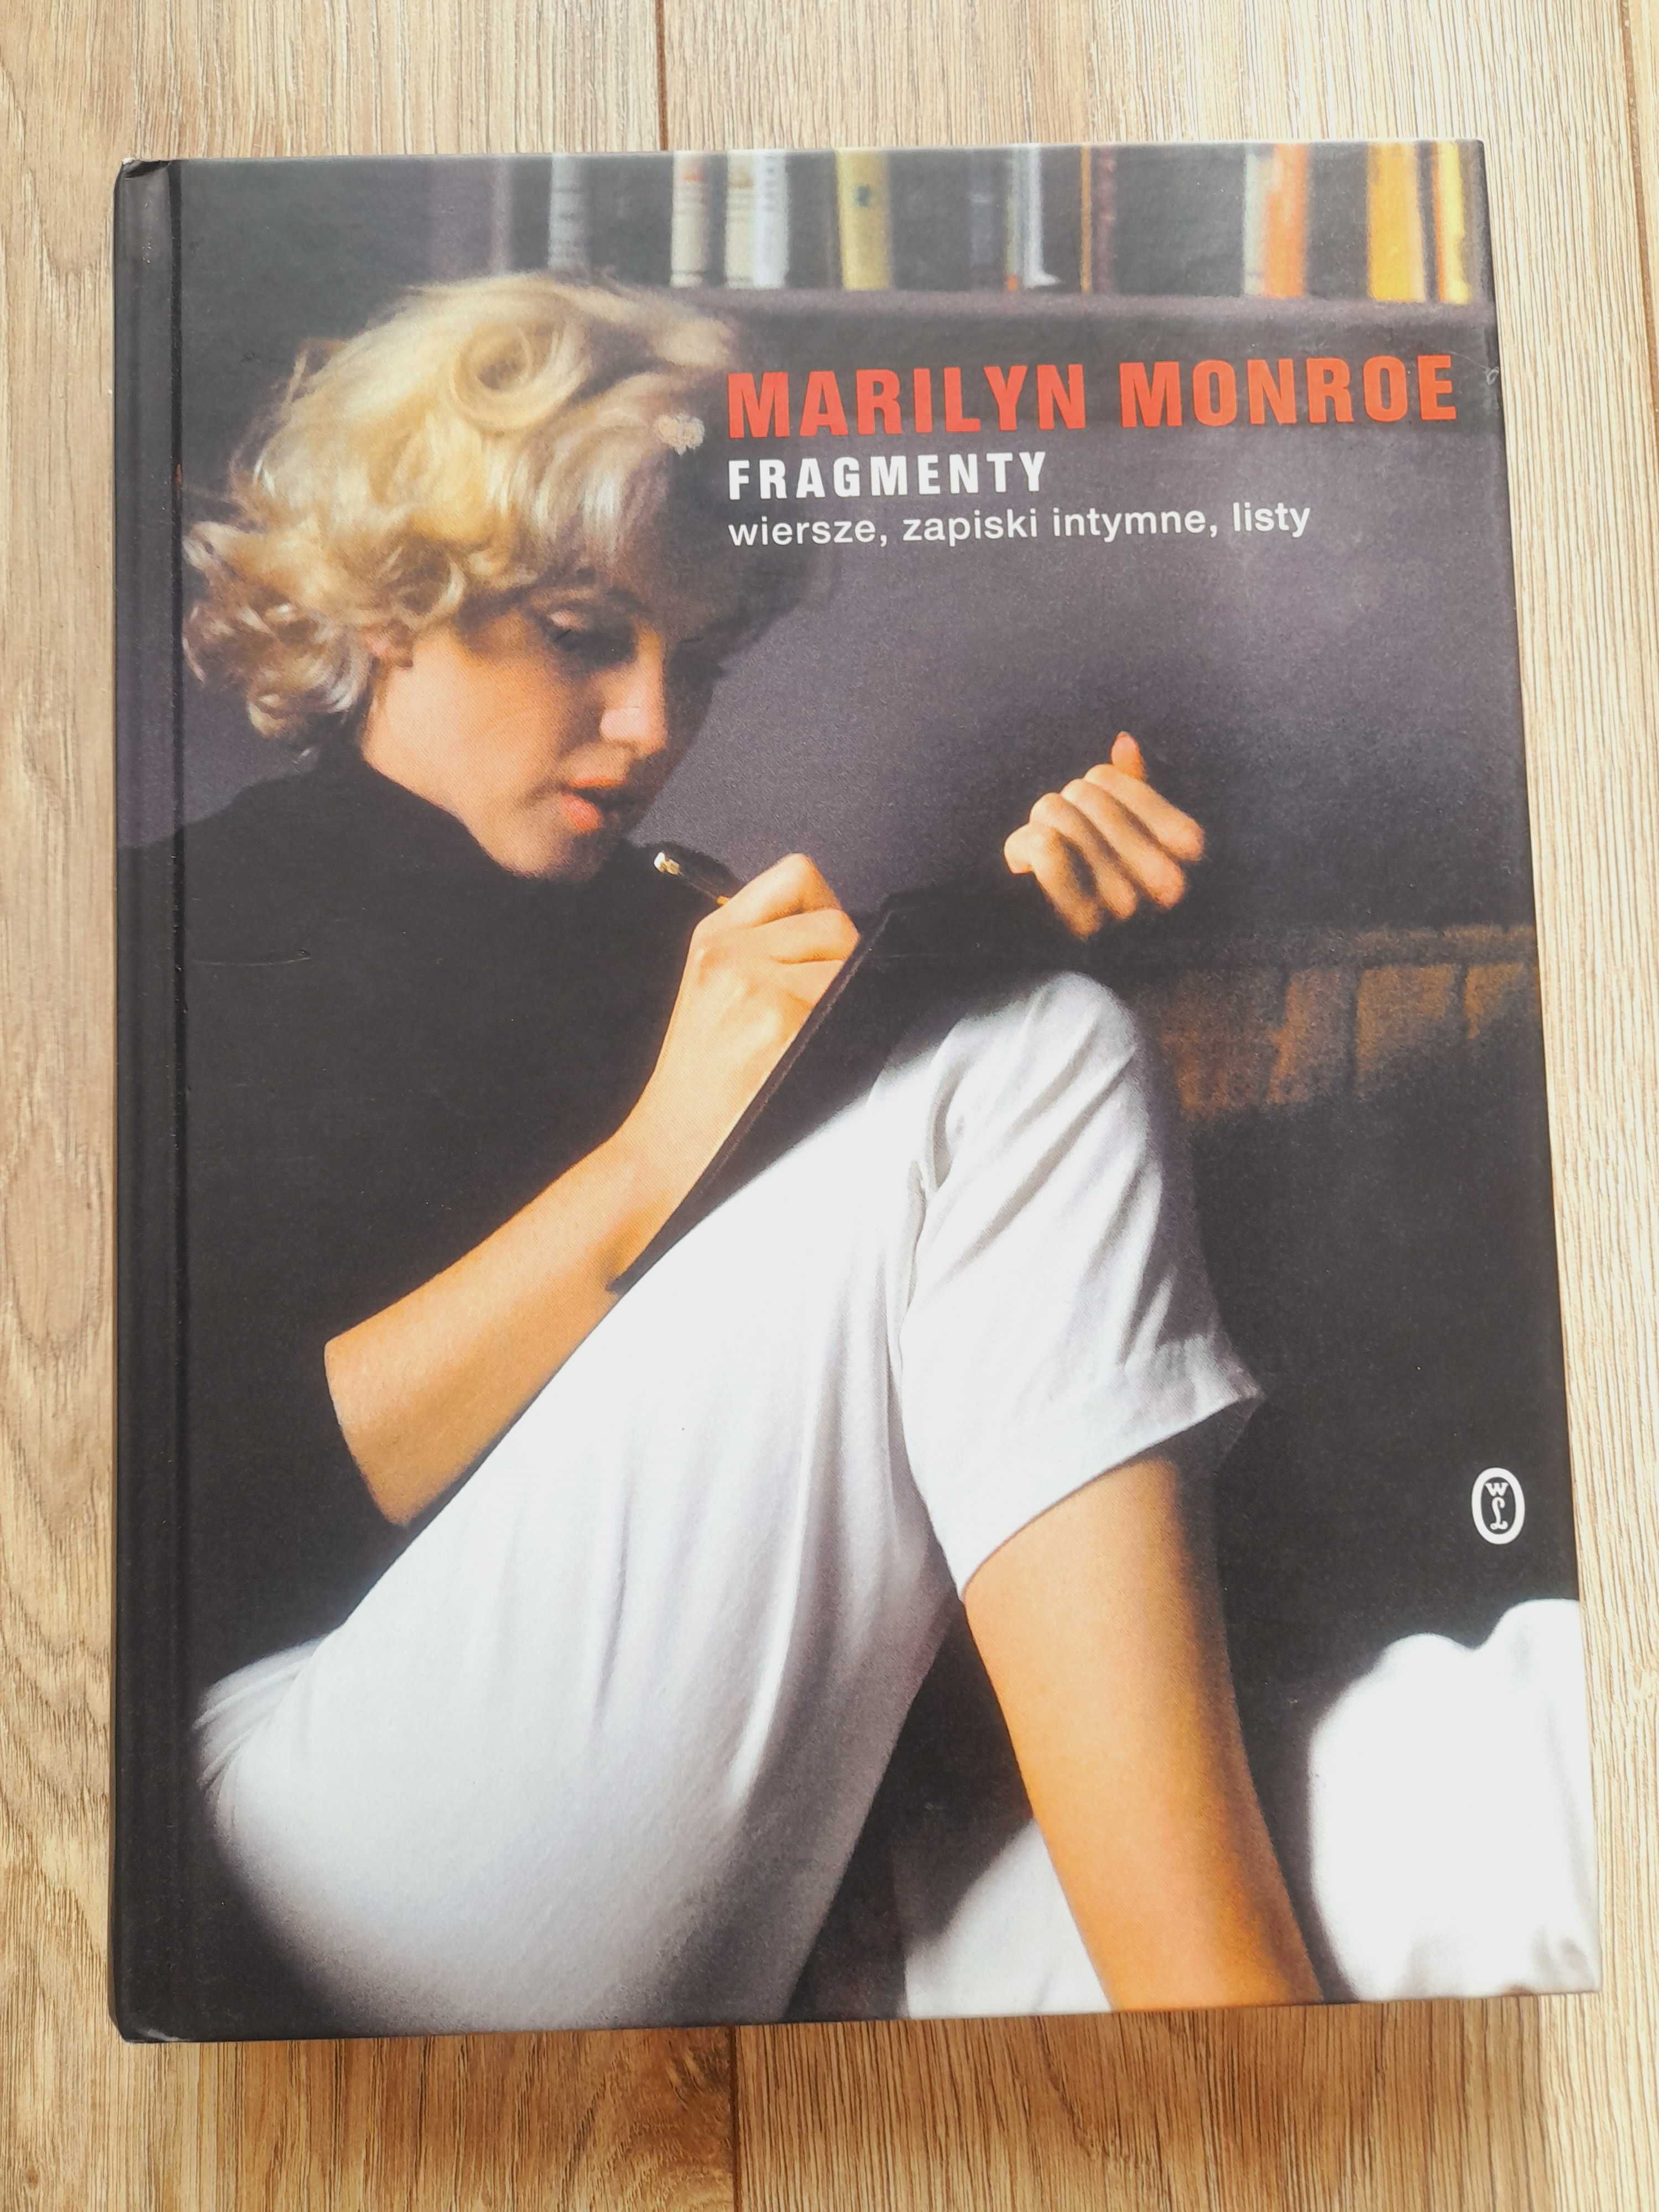 Fragmenty wiersze, zapiski intymne, listy Marilyn Monroe nowa